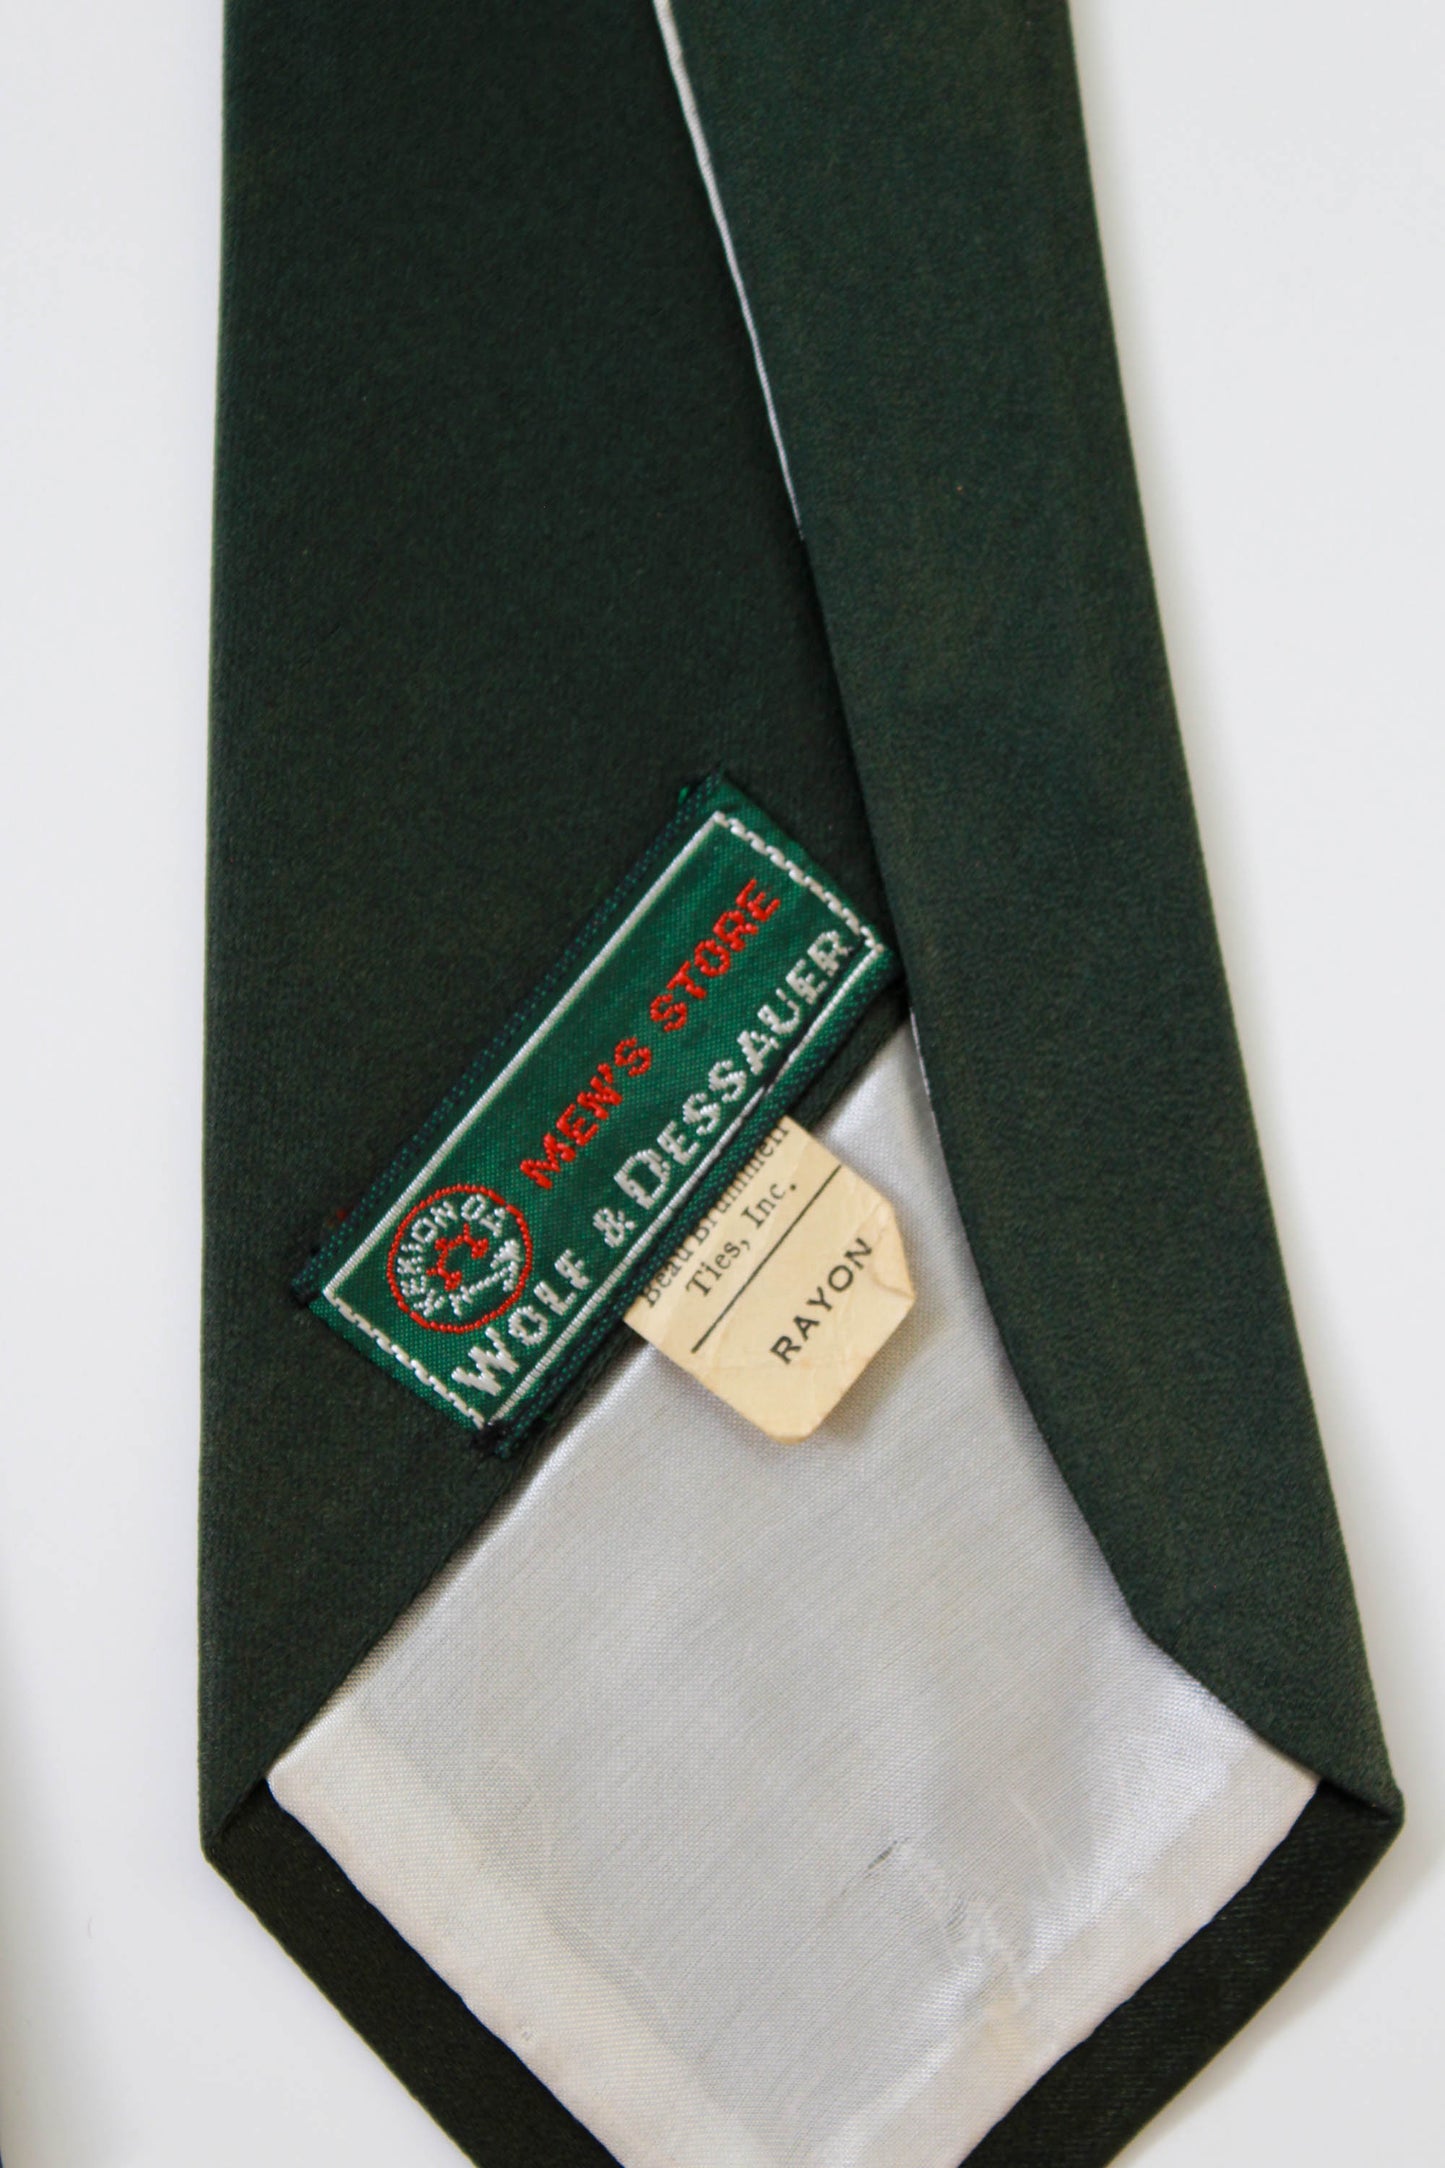 1940s Fuzzy Dog Necktie, Green